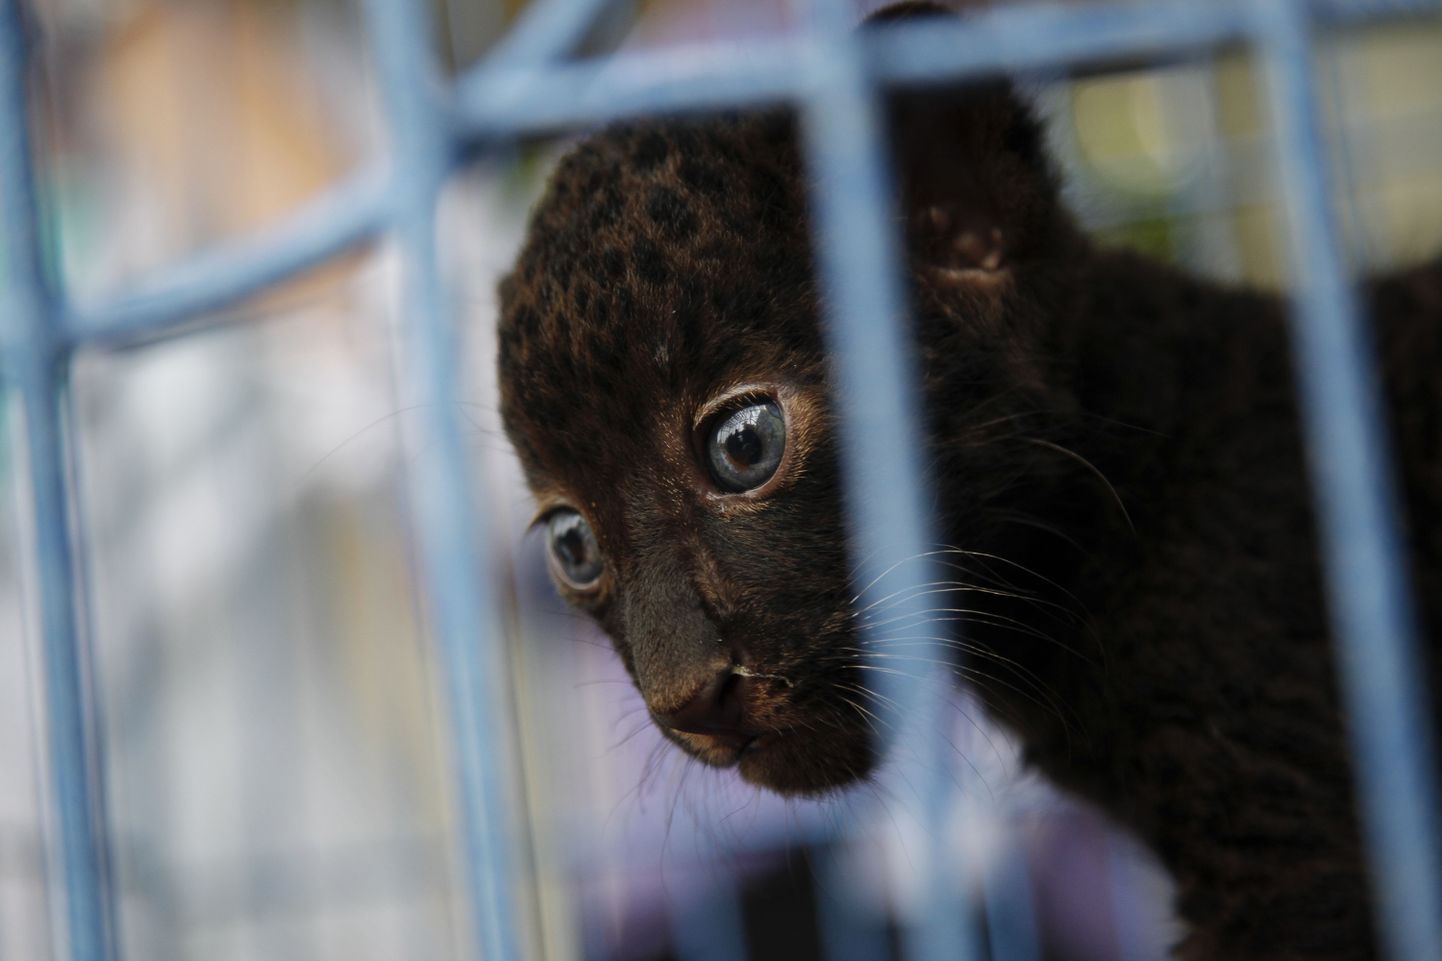 2 mēnešus vecs leopardēns. Ilustratīvs foto.